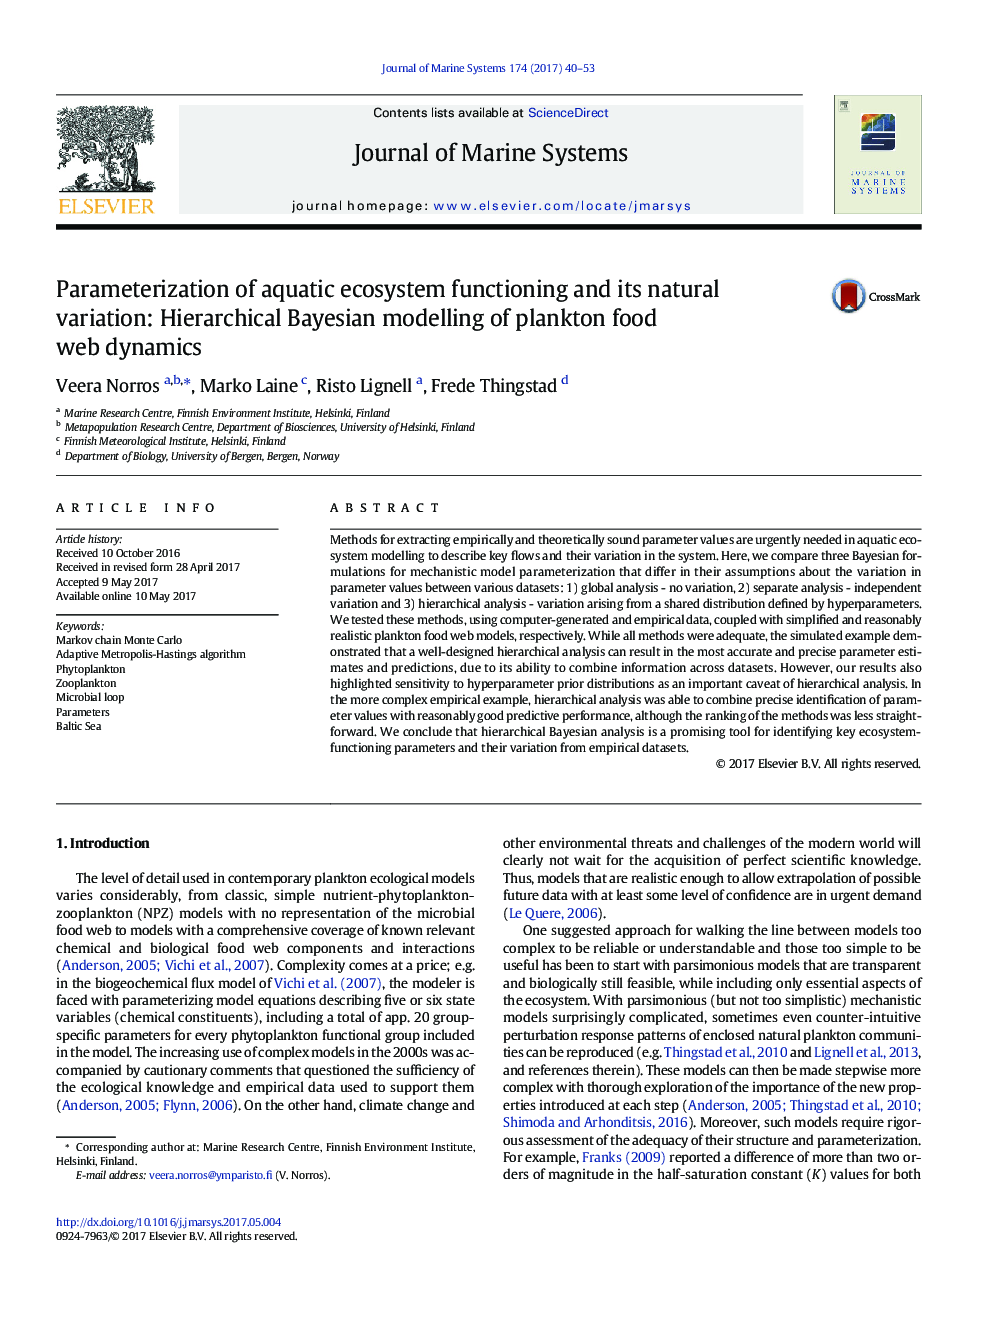 پارامتر کردن عملکرد اکوسیستم آبزی و تنوع طبیعی آن: مدل سازی باینری سلسله مراتبی پویایی وب سایت غذای پلانکتون 